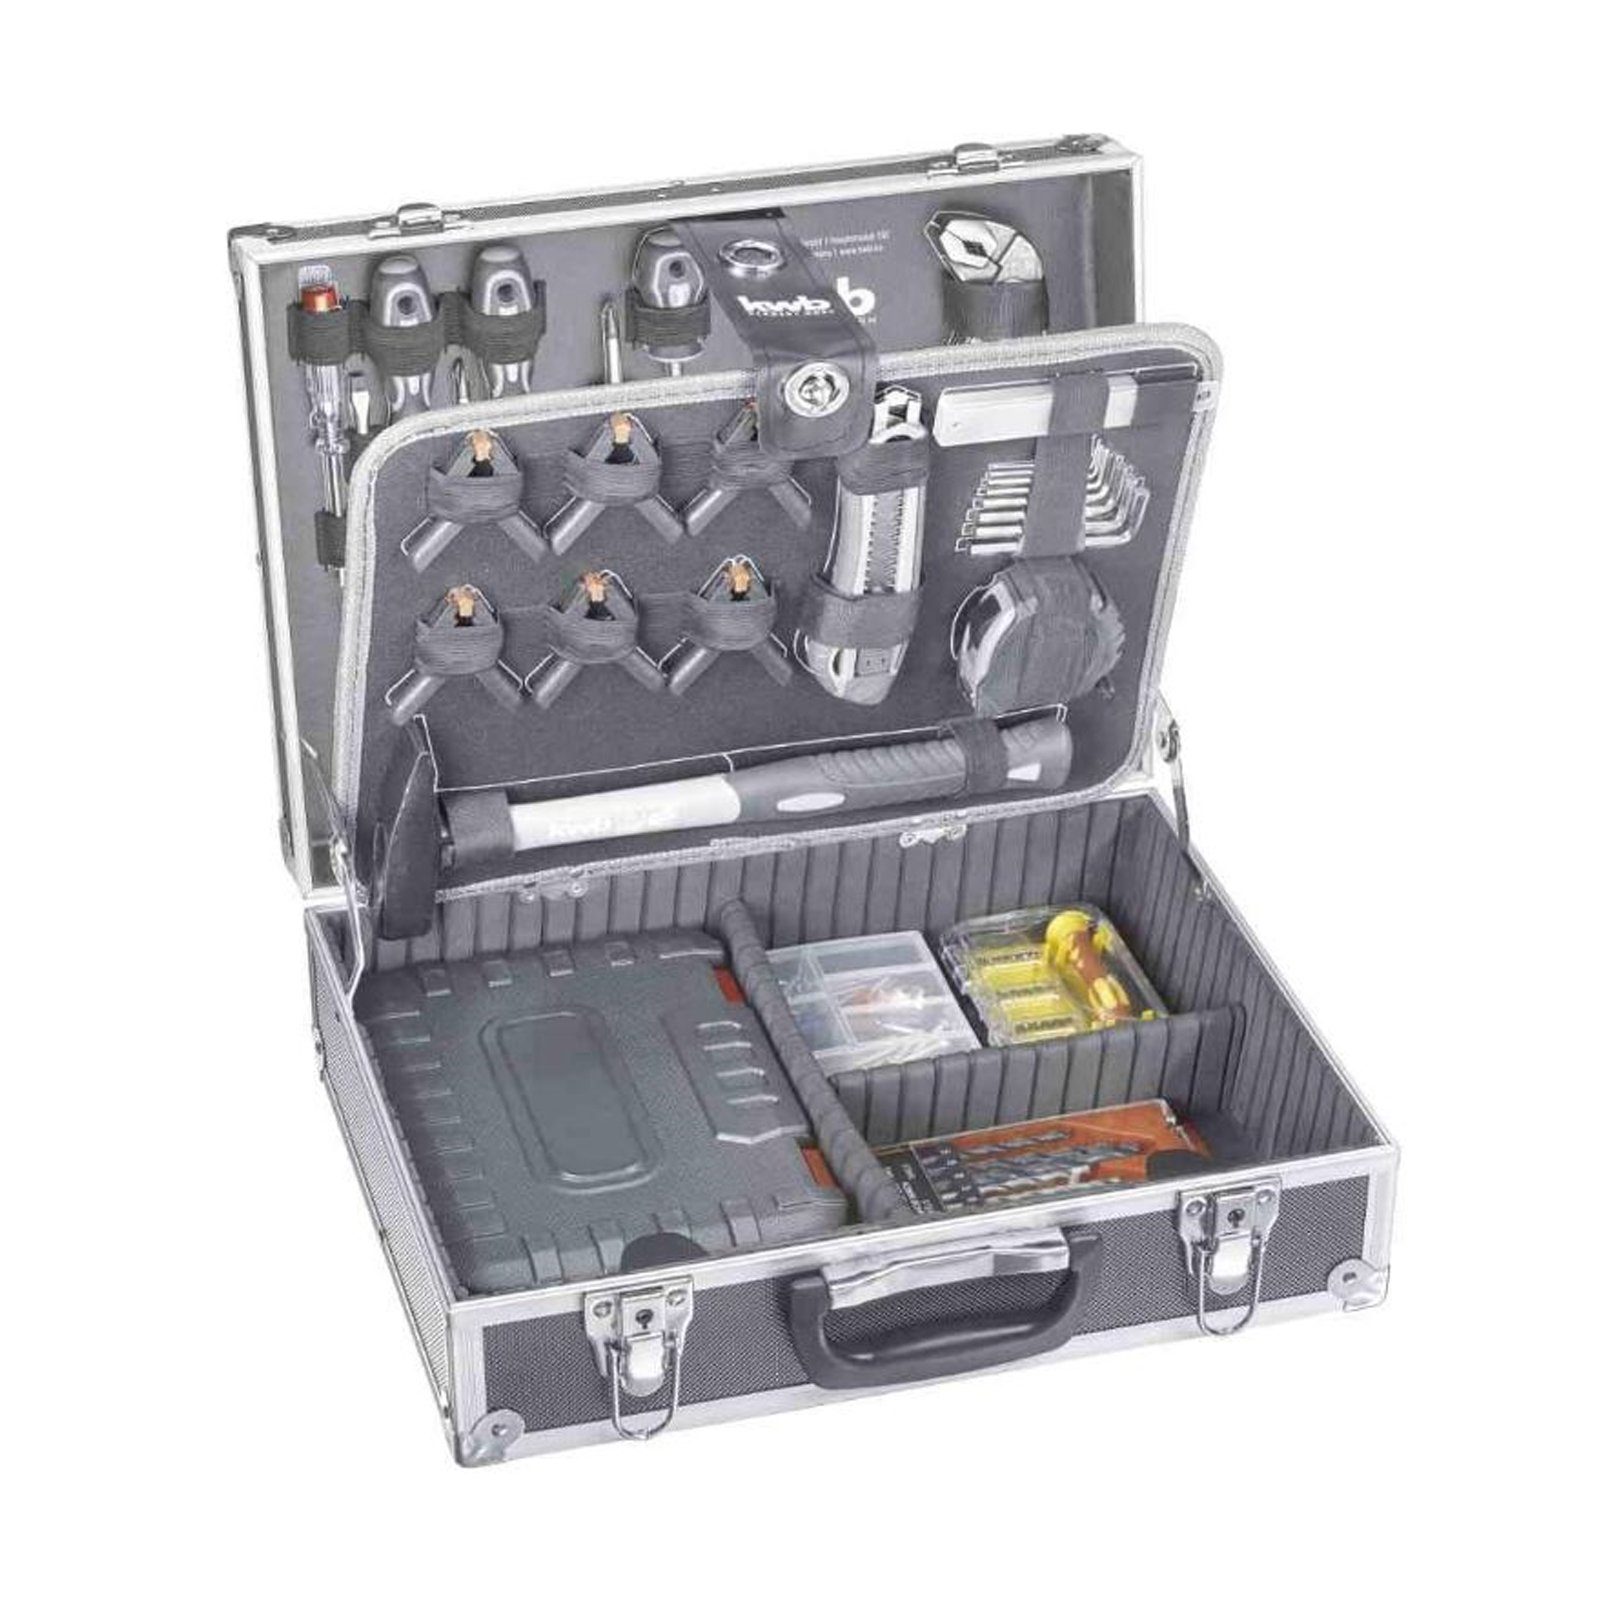 199-teilig, gefüllt, Werkzeug-Koffer kwb Werkzeugset Werkzeug-Set, inkl. und robust